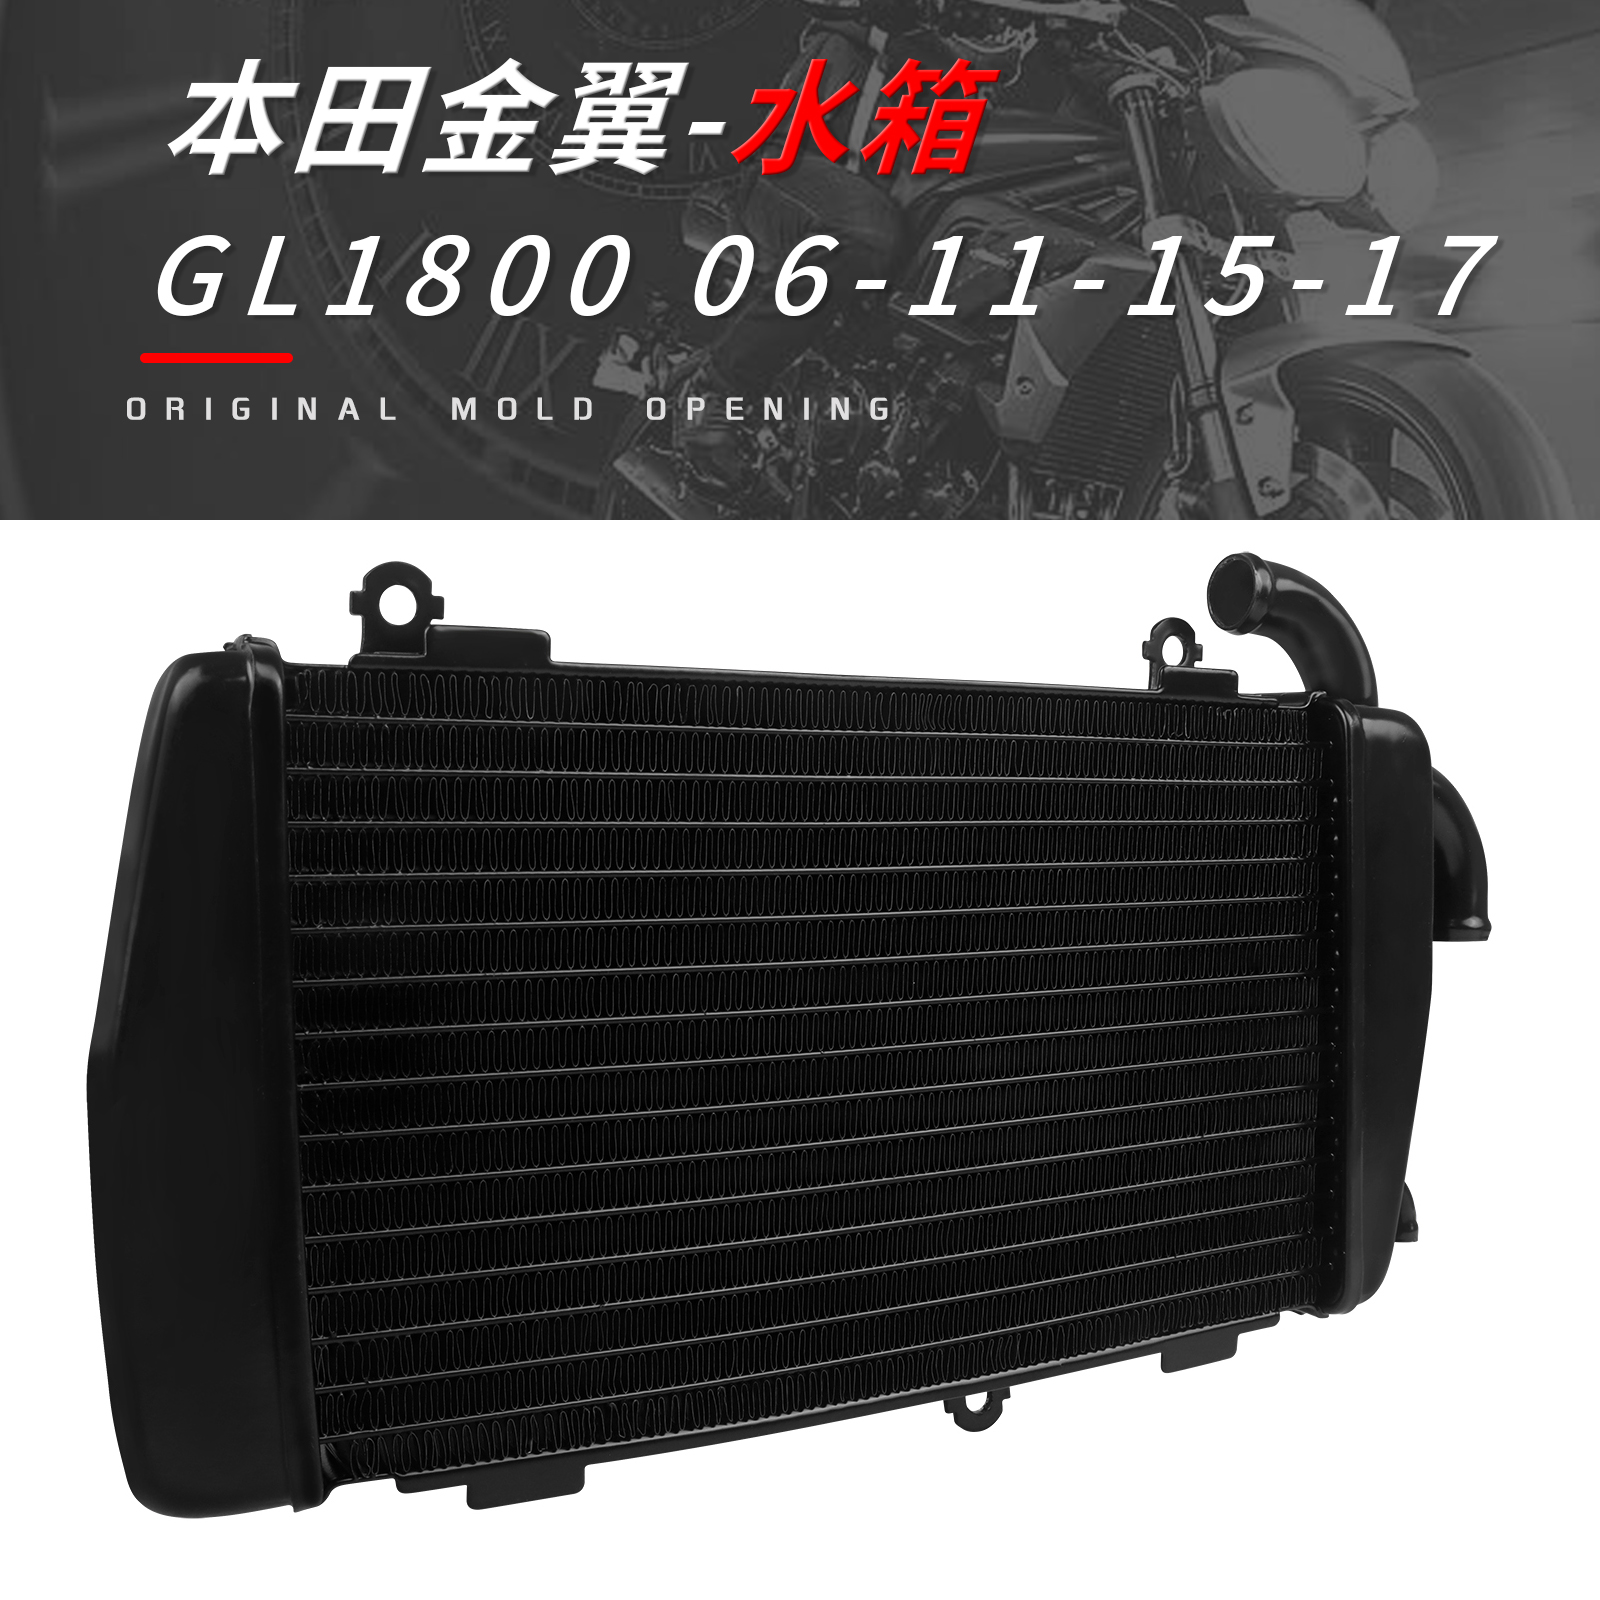 适用本田GL1800 06-11-15-17年改装摩托车水箱总成 水冷器散热器